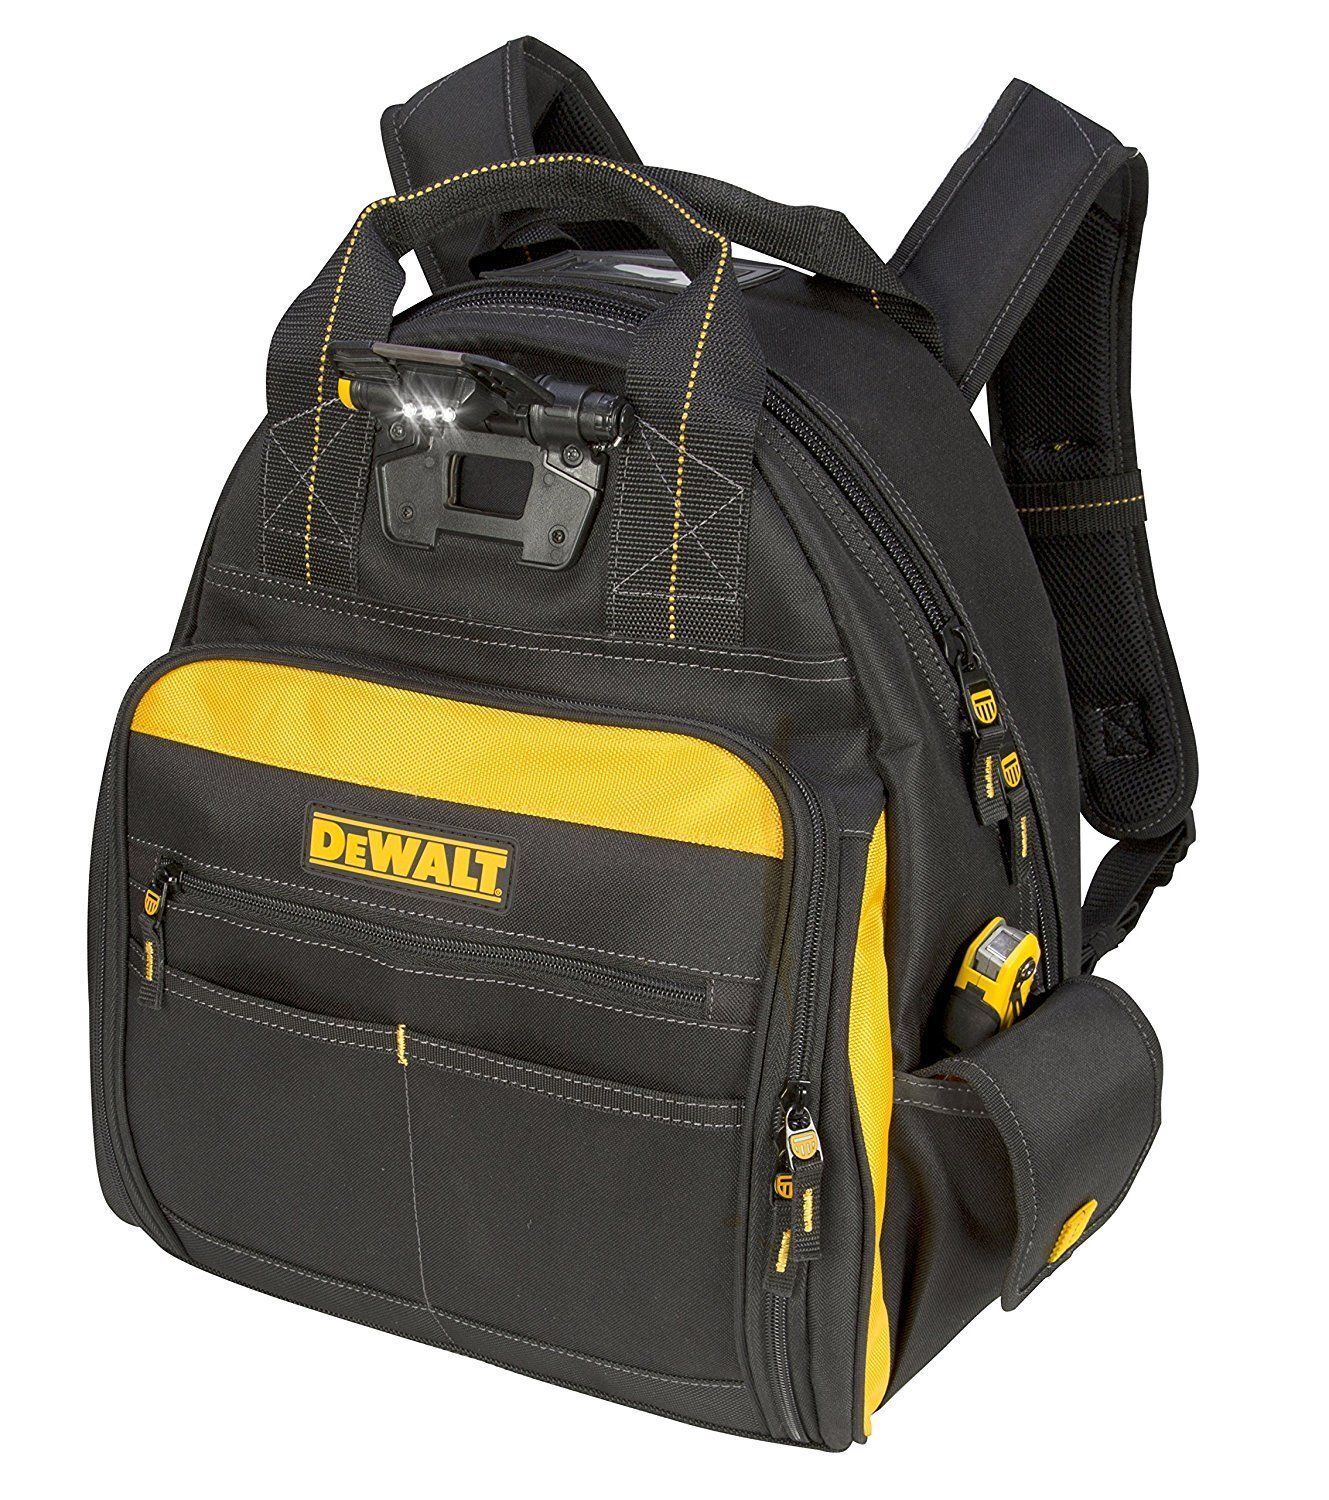 Dewalt DGL523 Lighted Tool Backpack Bag, 57-Pockets - Brand New